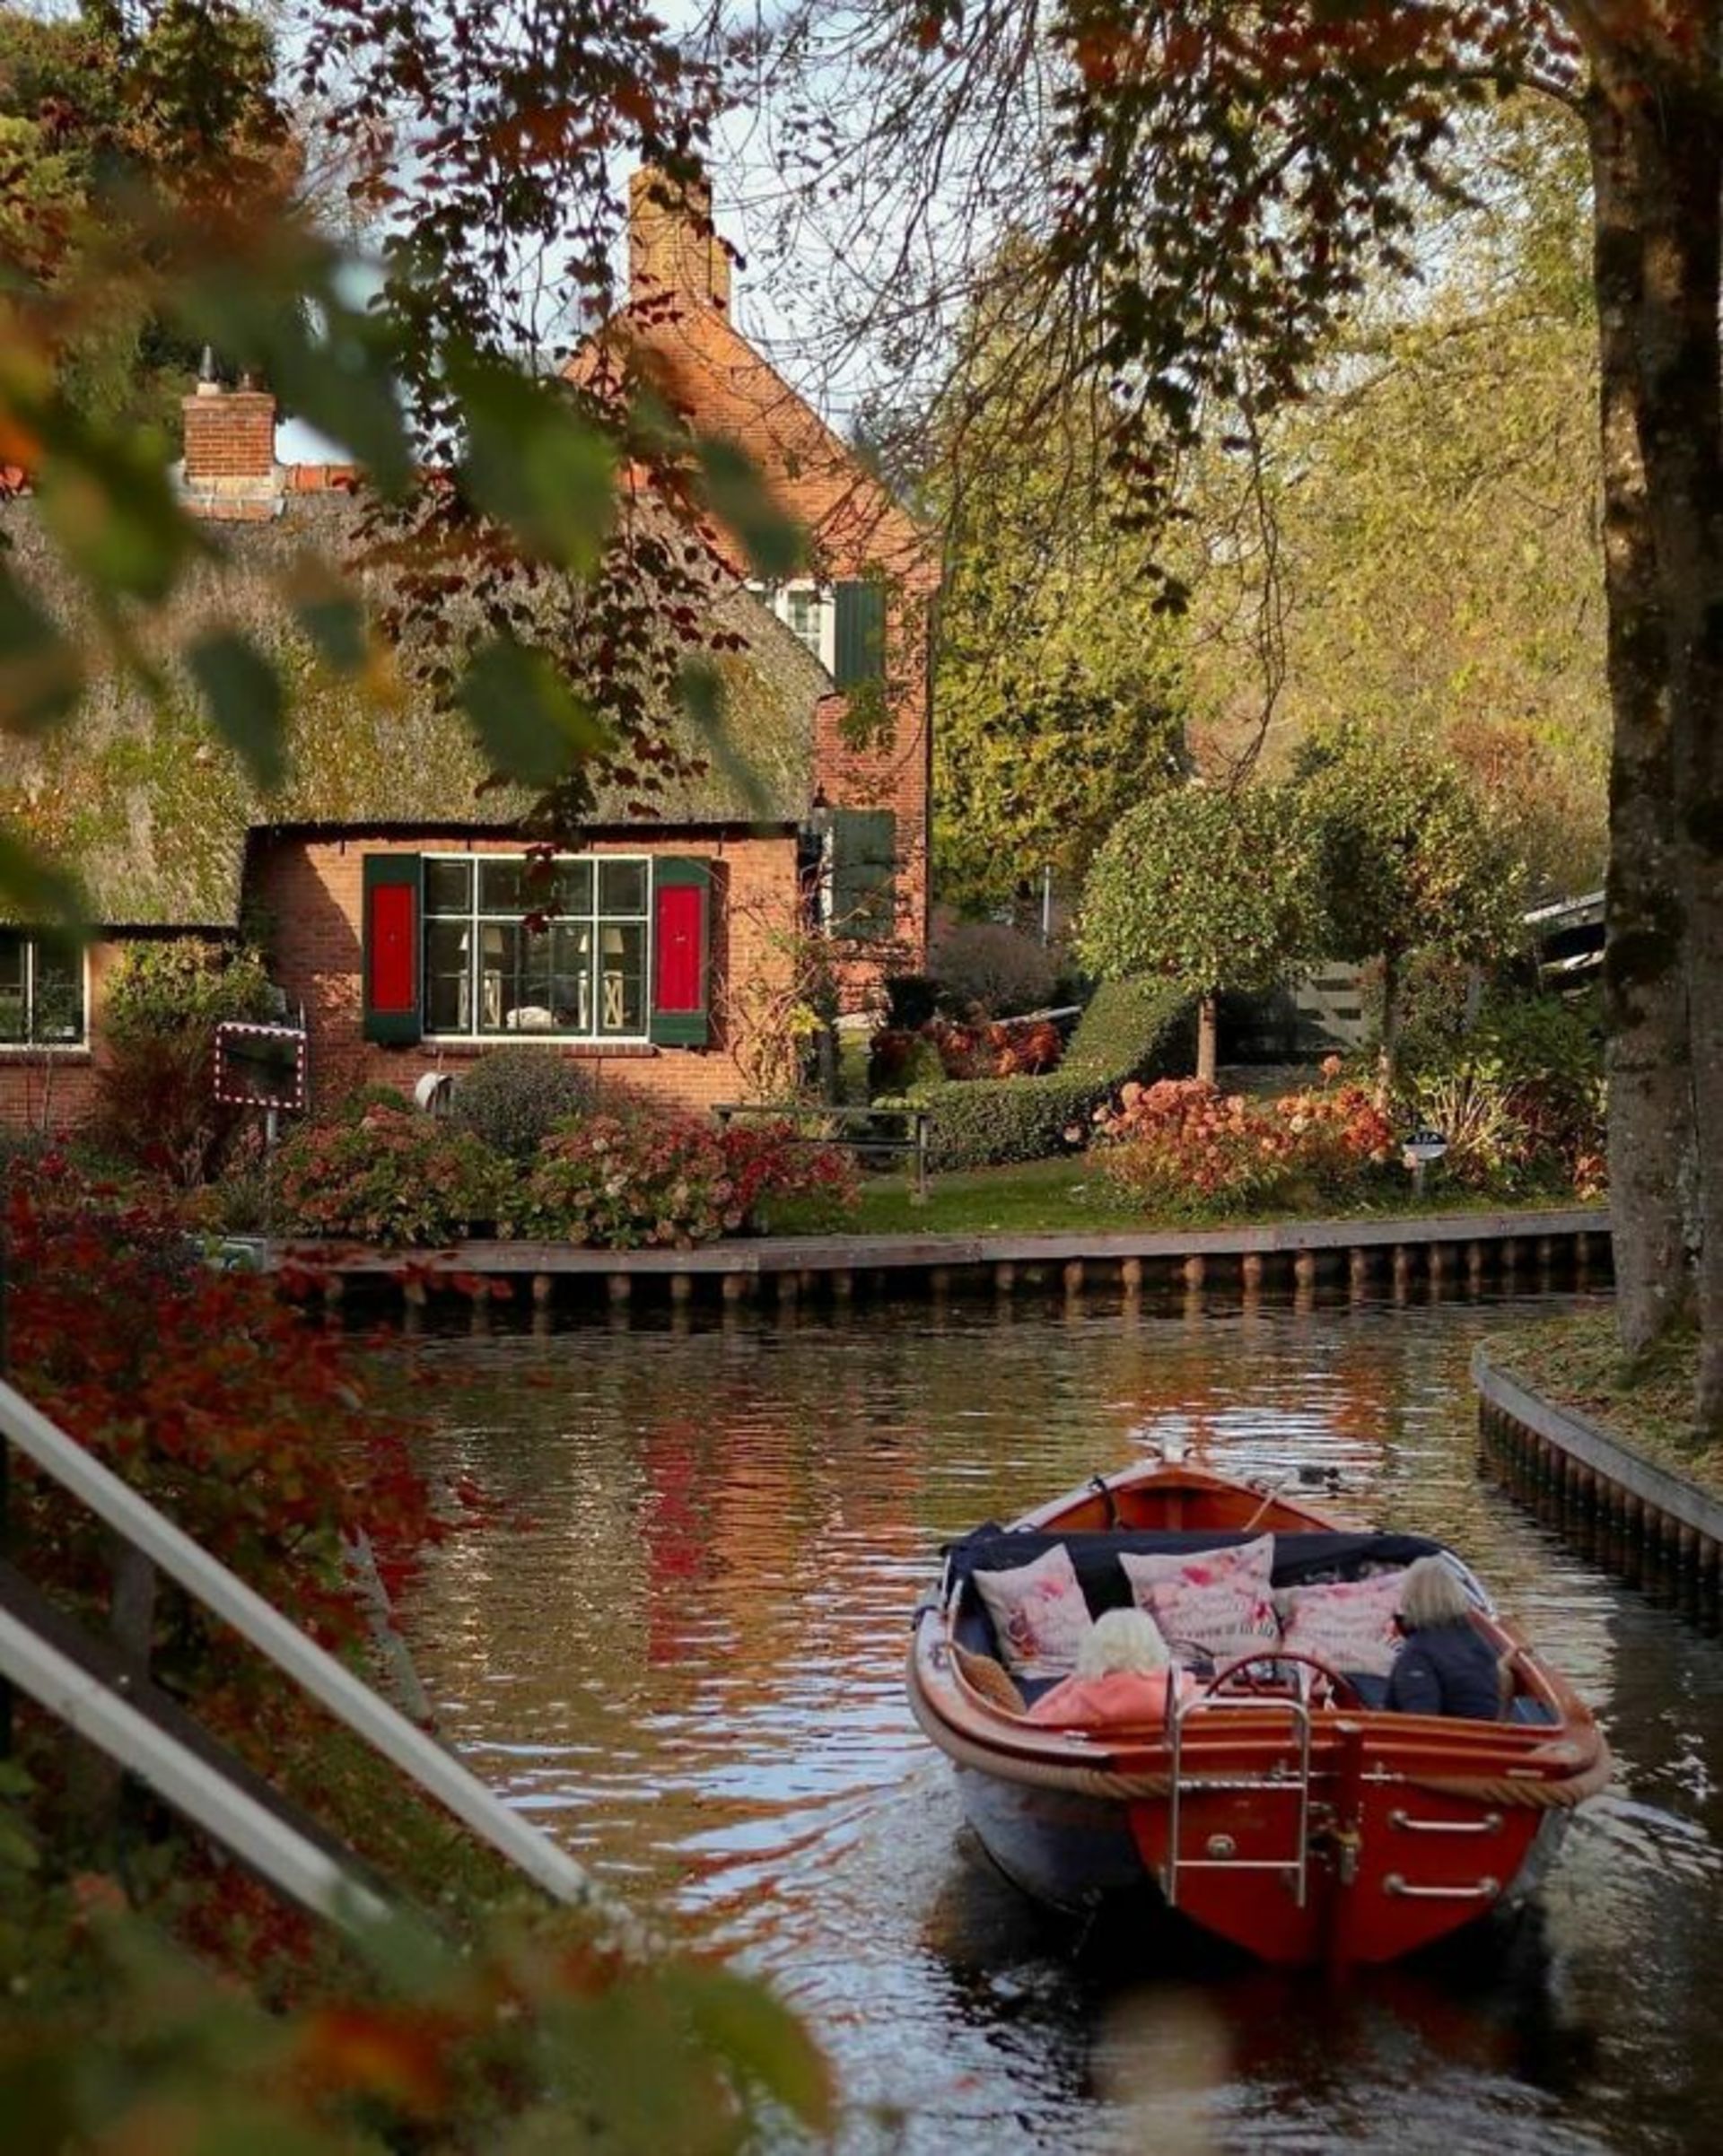 قایق کوچک در رودخانه با دو پیرزن در طبیعت هلند